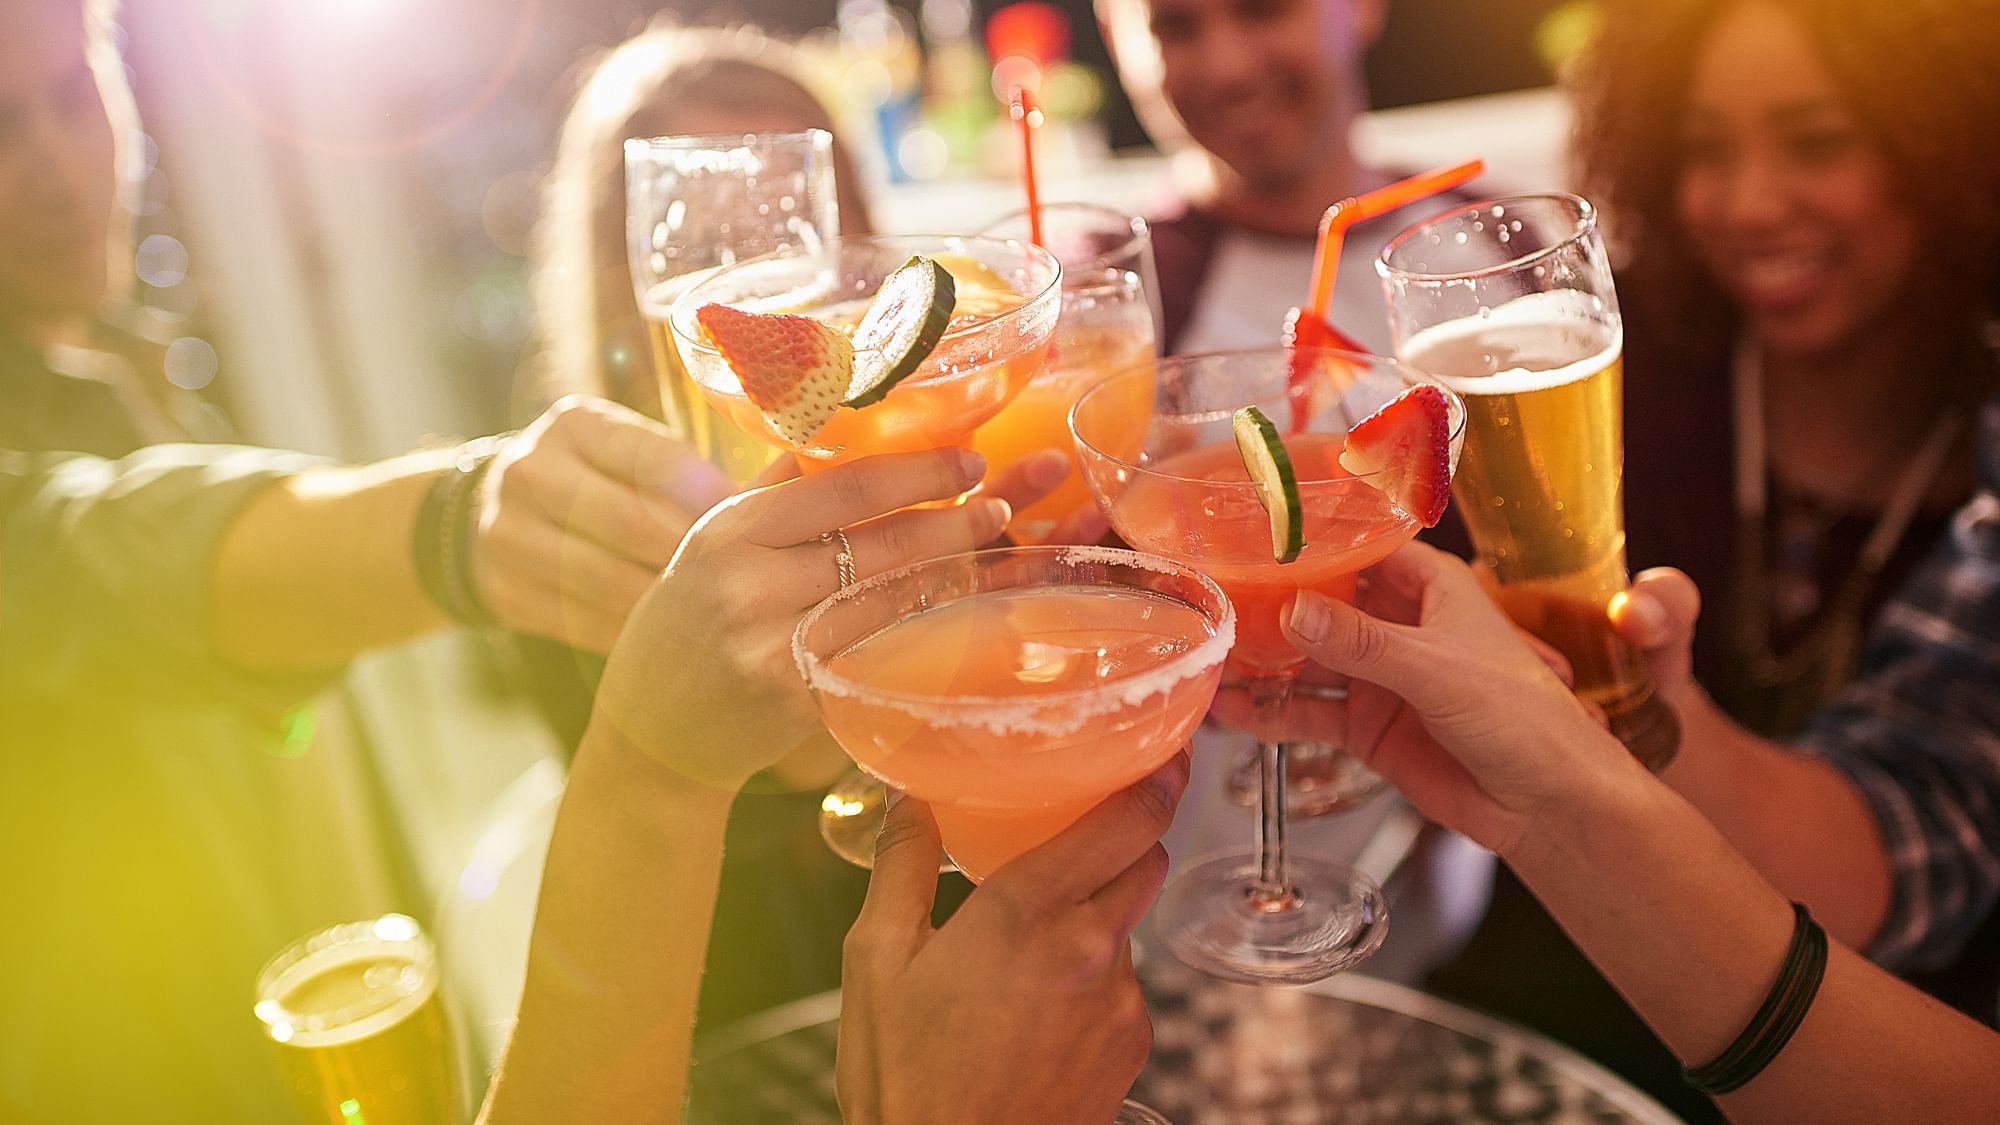 <div class="paragraphs"><p>Tips To Avoid Hangover: पार्टी में जाने से पहले ही तय कीजिए कितना पीना है.</p></div>